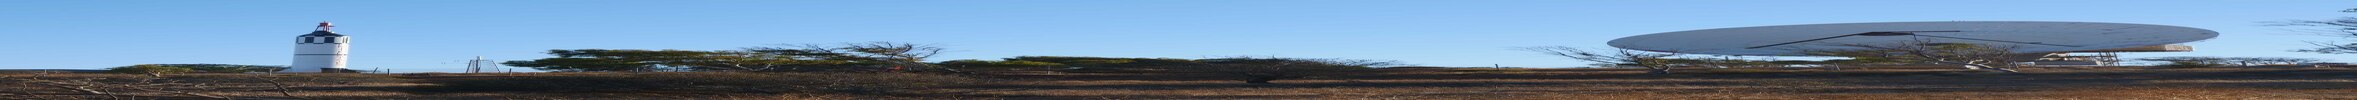 卡那封一座小山的风景照，背景是火箭和 OTC 天线